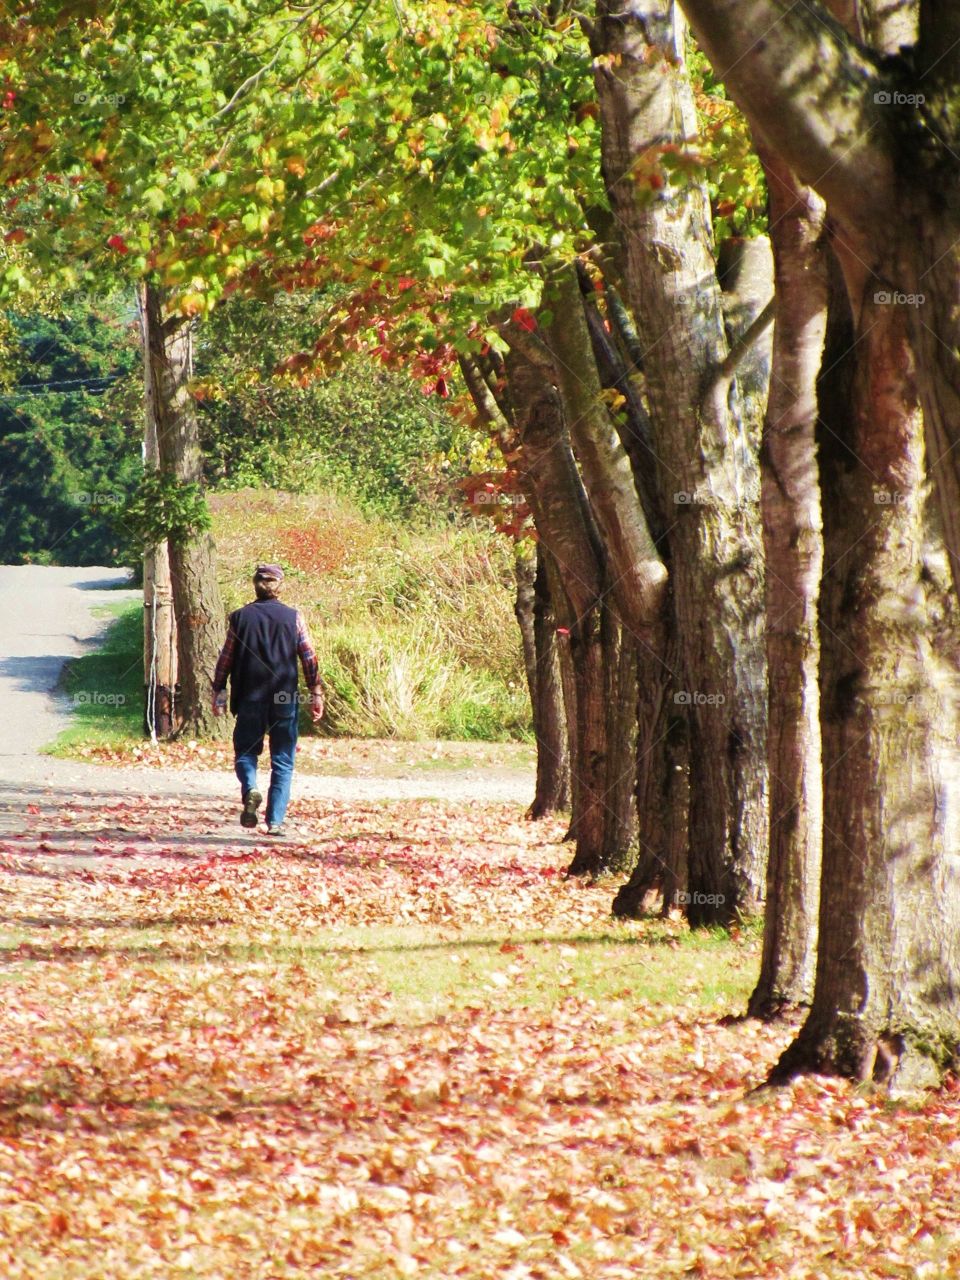 Walking in the fall
